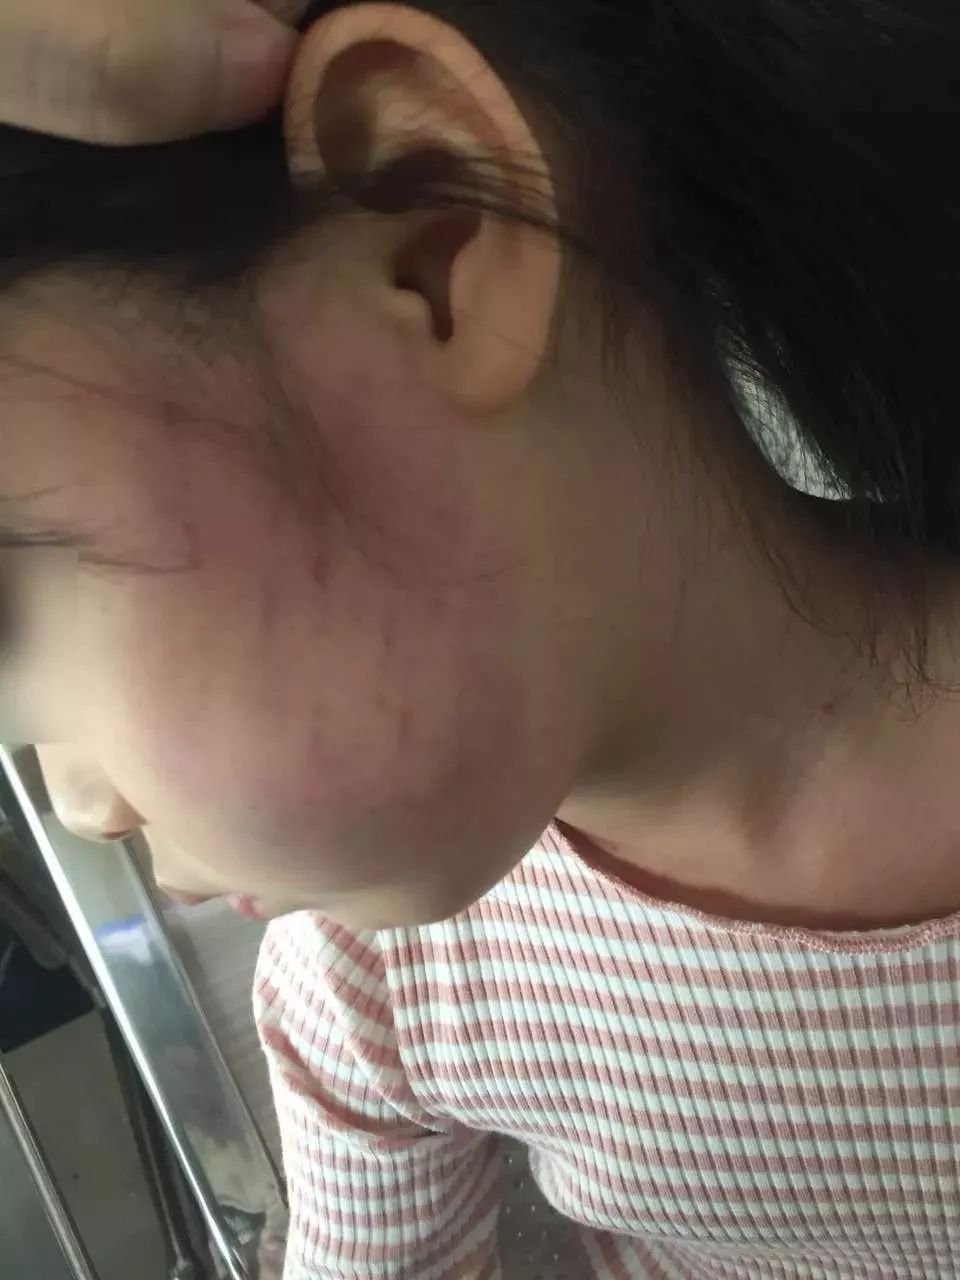 东莞某幼儿园出现虐童现象! 4岁女童遭扇掌一脸淤青